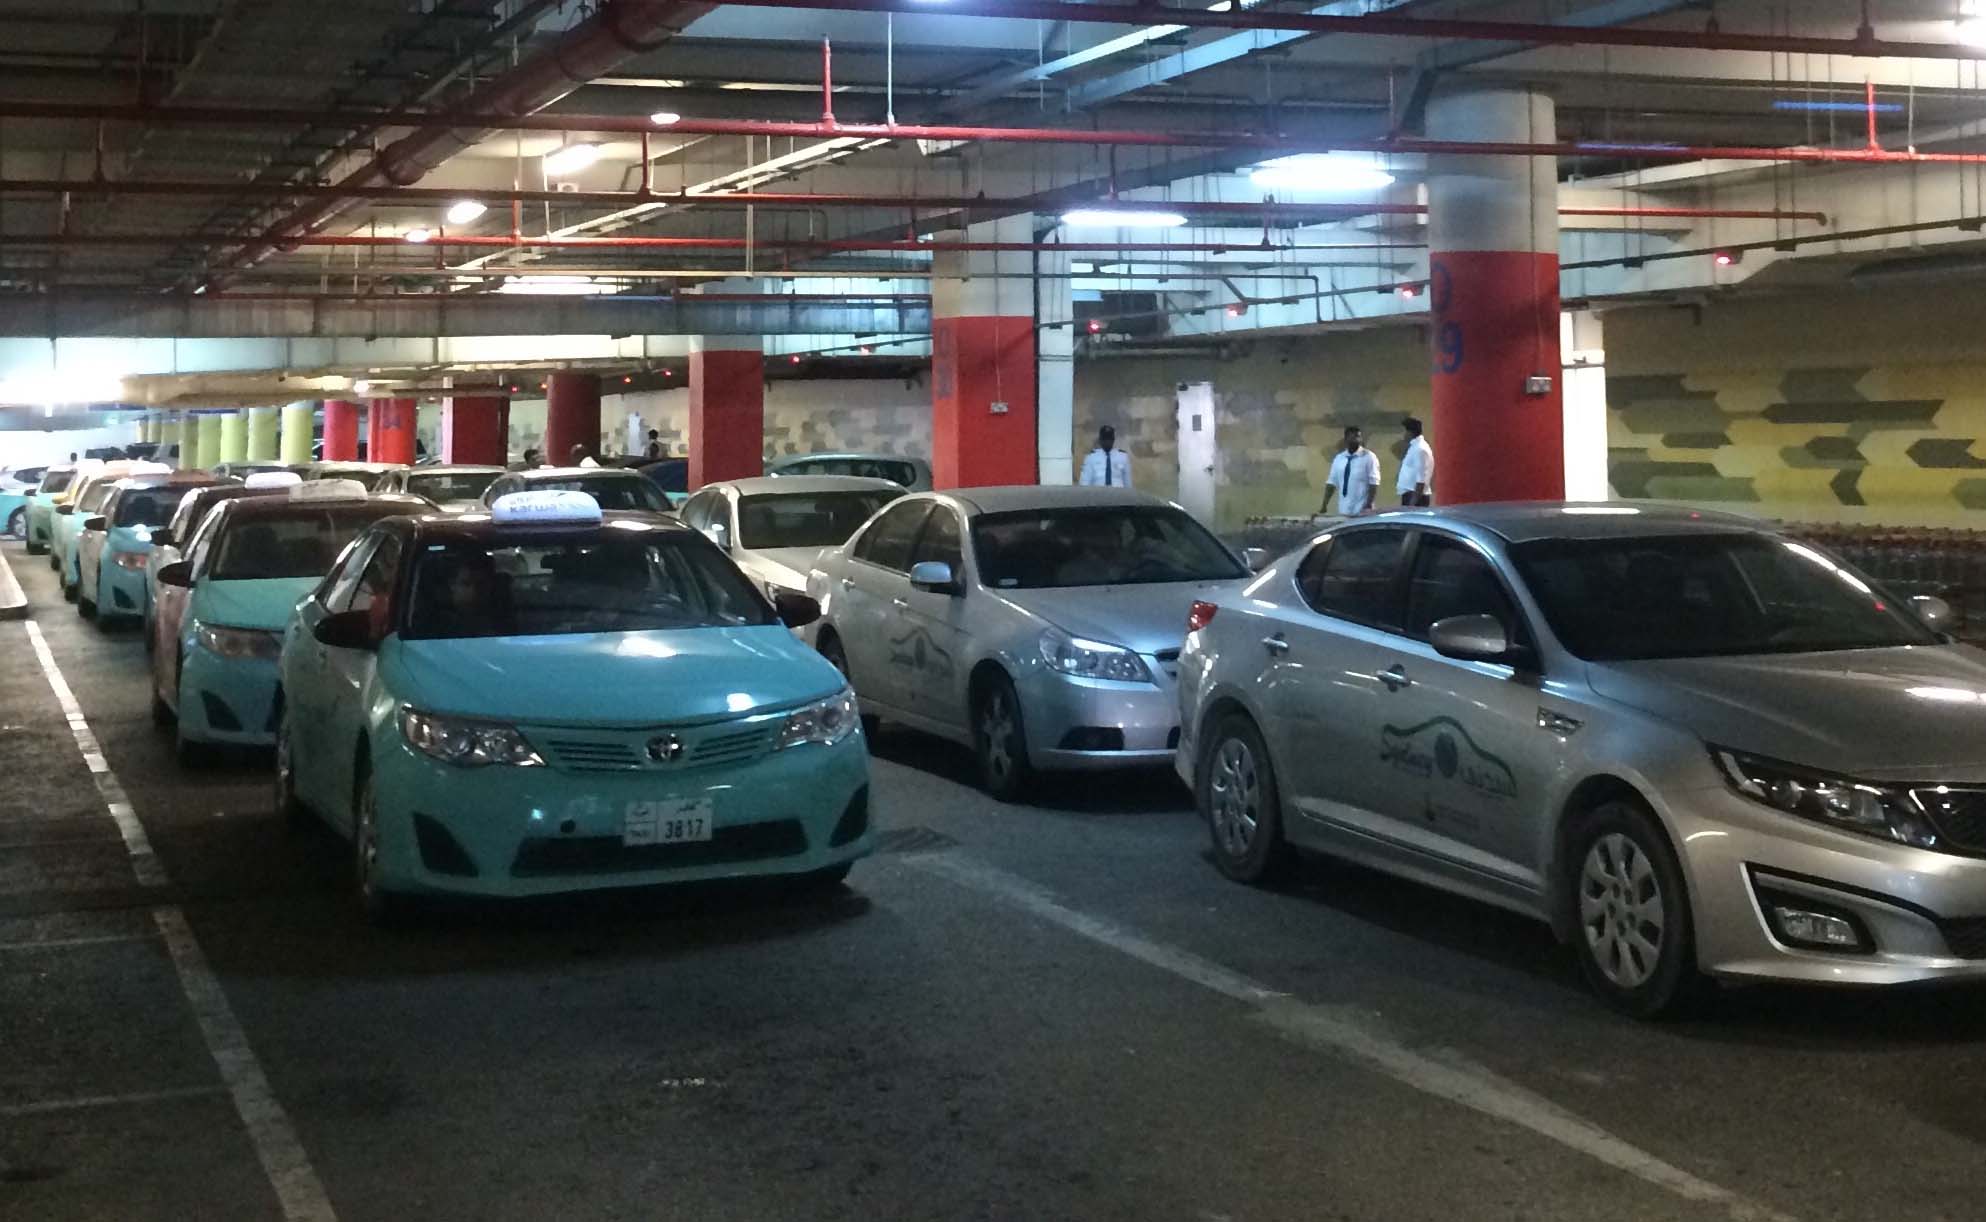 A taxi queue at City Center Mall.